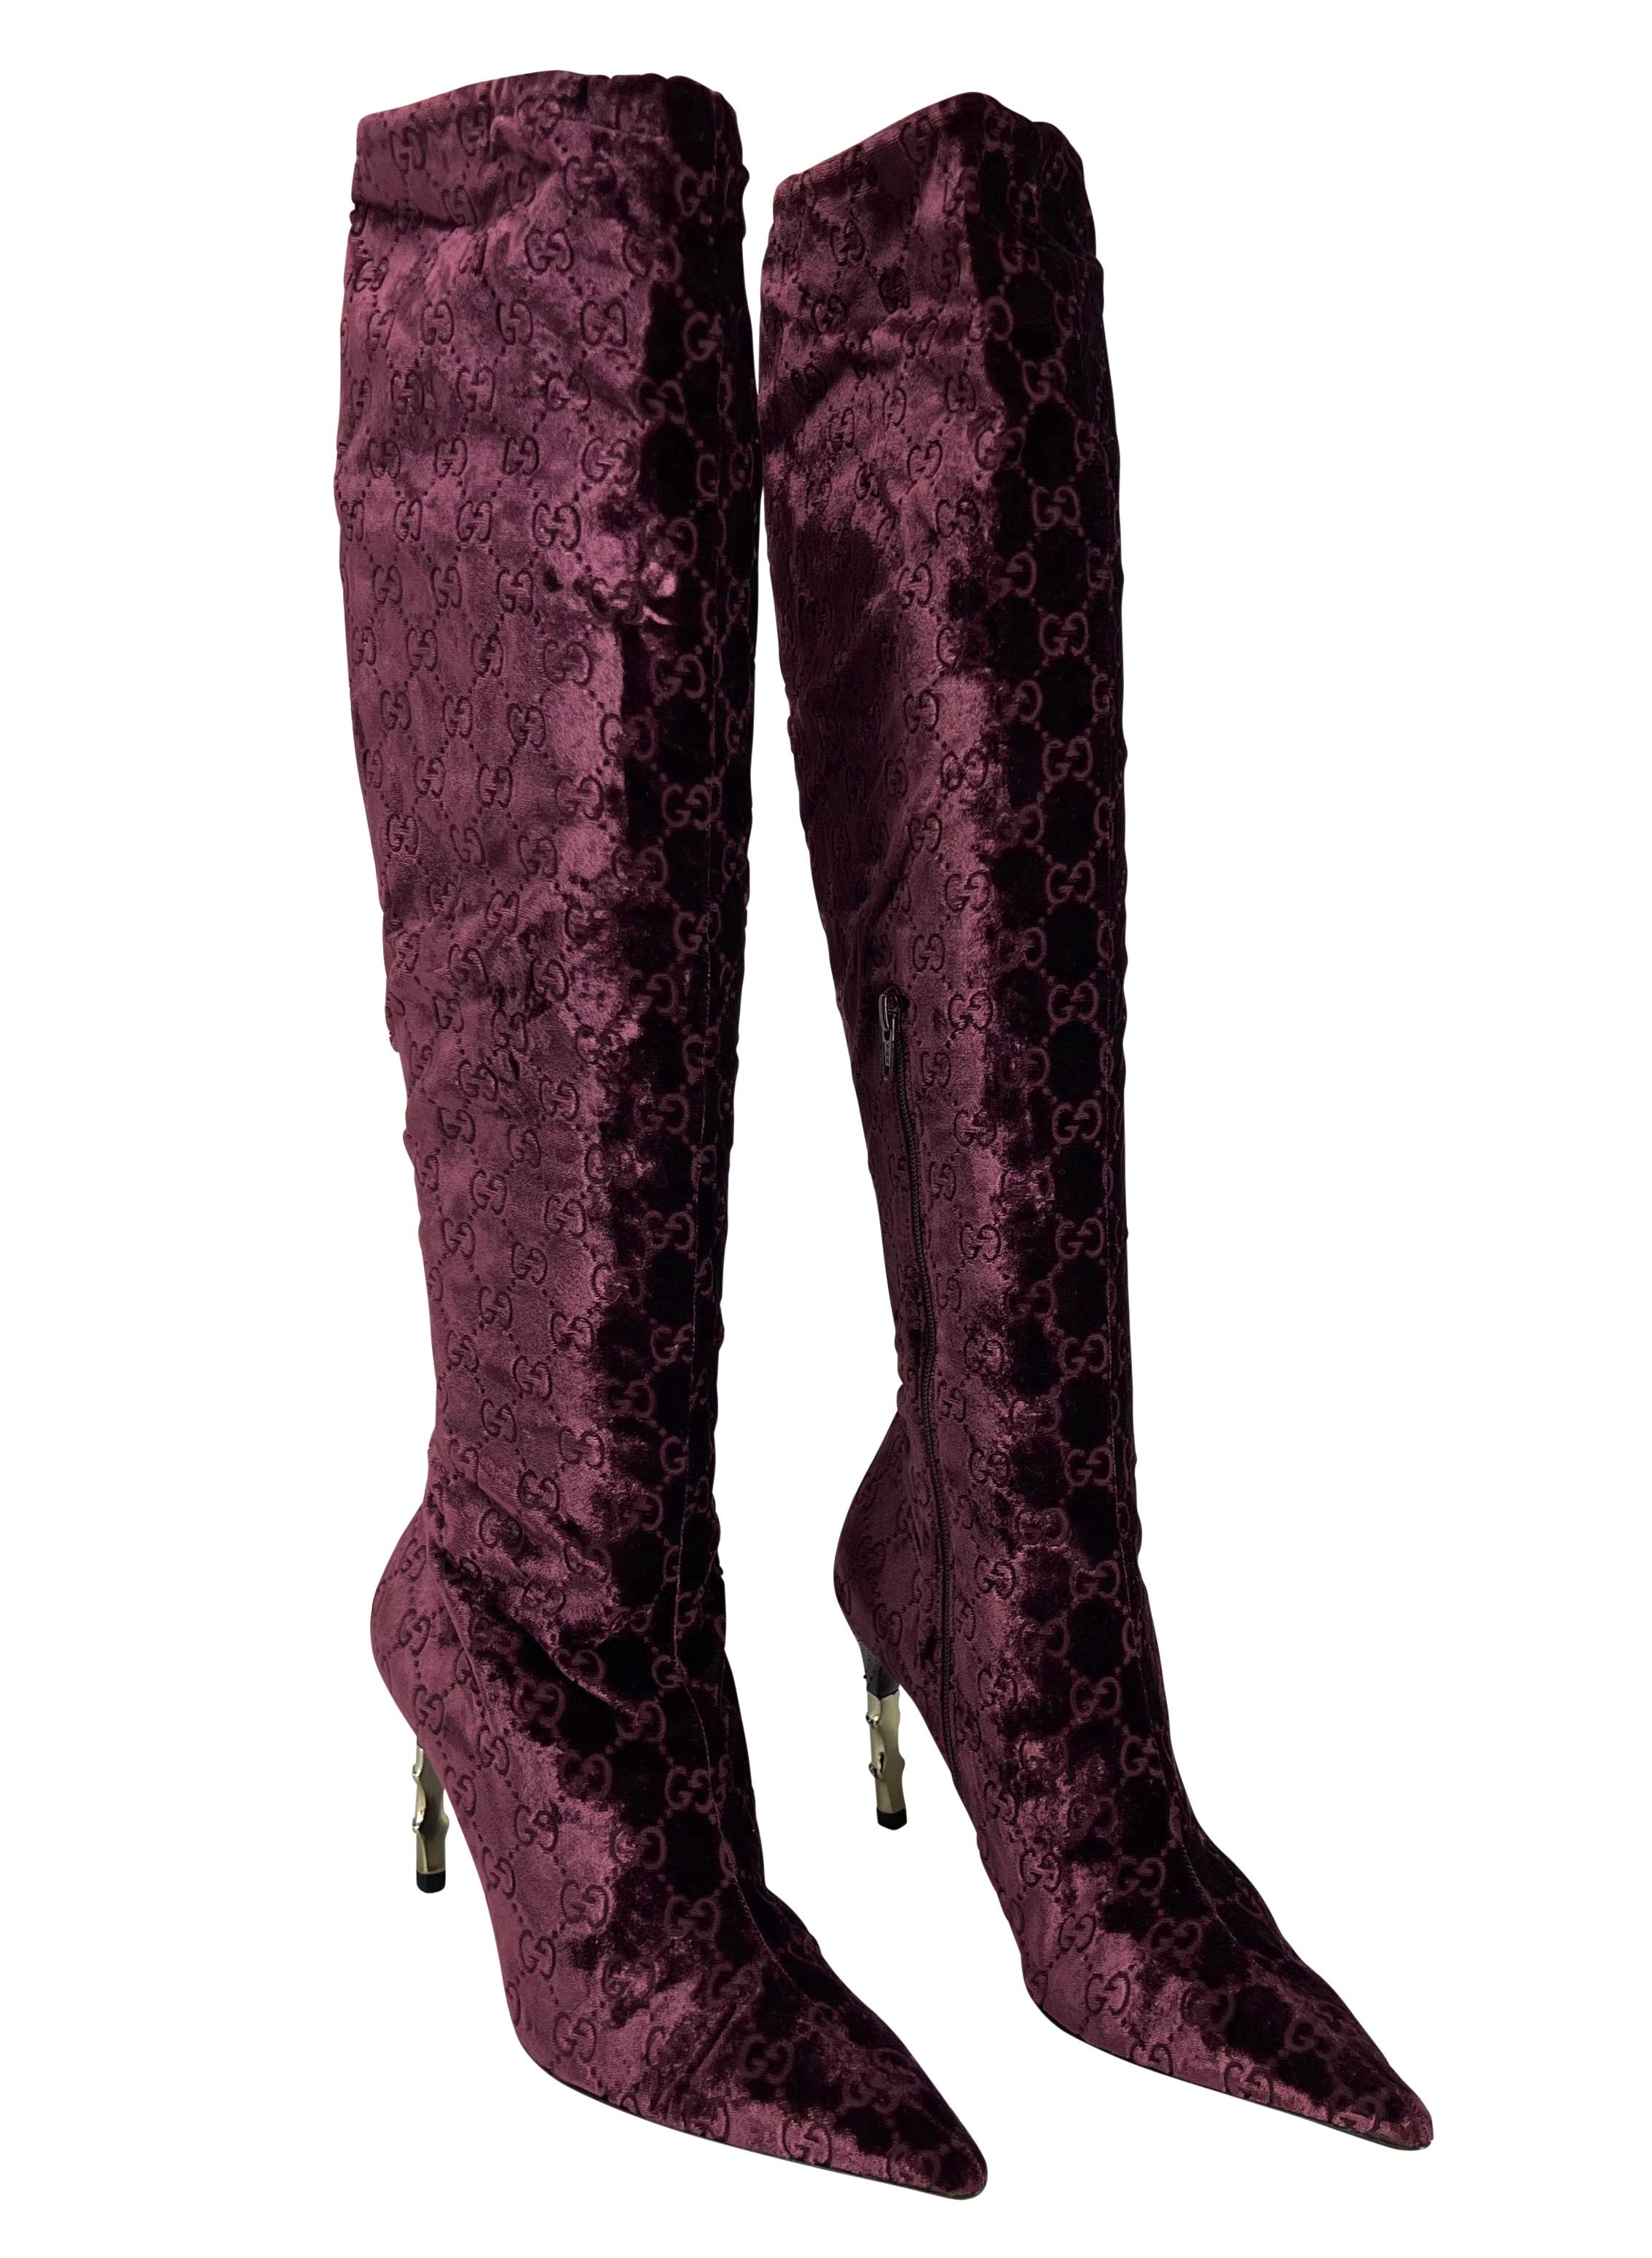 Wir präsentieren ein fabelhaftes Paar burgunderroter Gucci-Stiefel mit 'GG'-Monogramm-Absatz aus Samt, entworfen von Tom Ford. Diese Stiefel aus der Herbst/Winter-Kollektion 2004 sind mit dem berüchtigten GG-Print der Marke bedruckt und mit einem